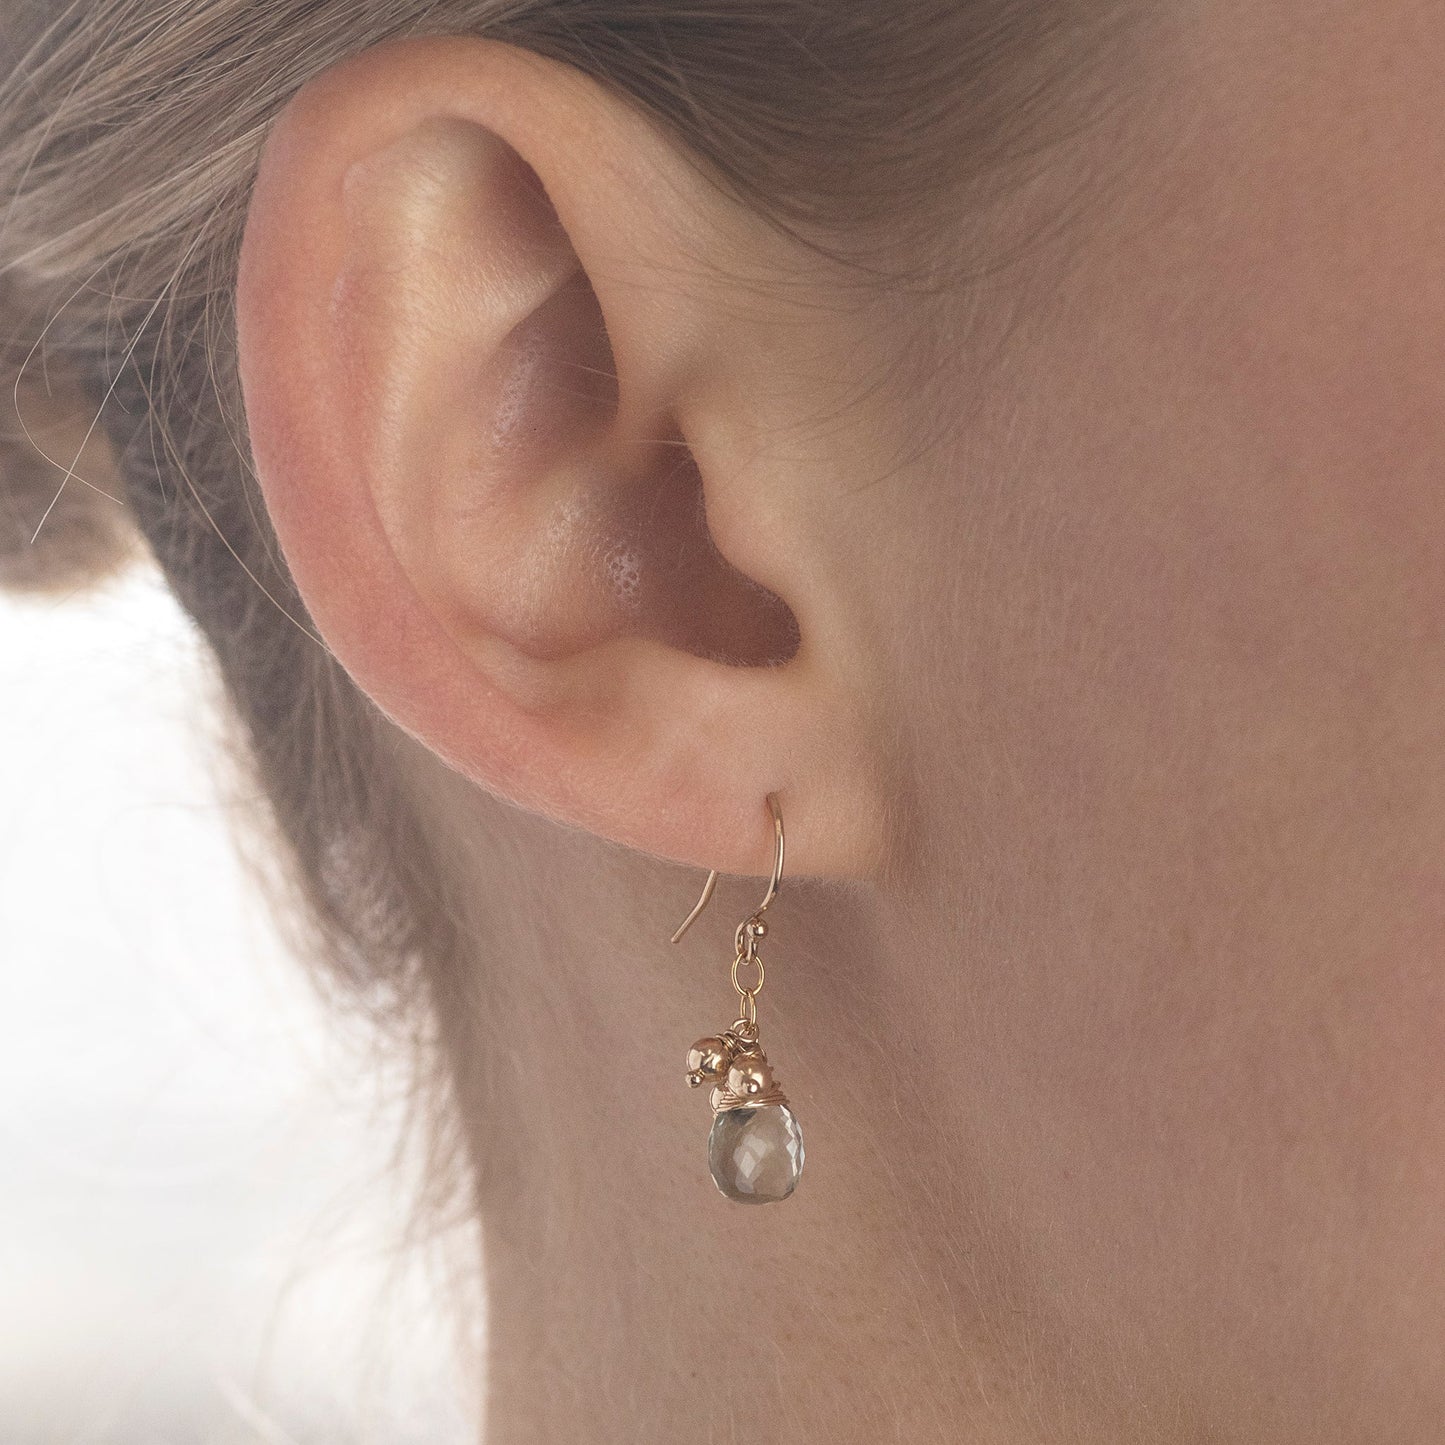 Jane Austen Inspired - Lapis Earrings - Silver & Gold